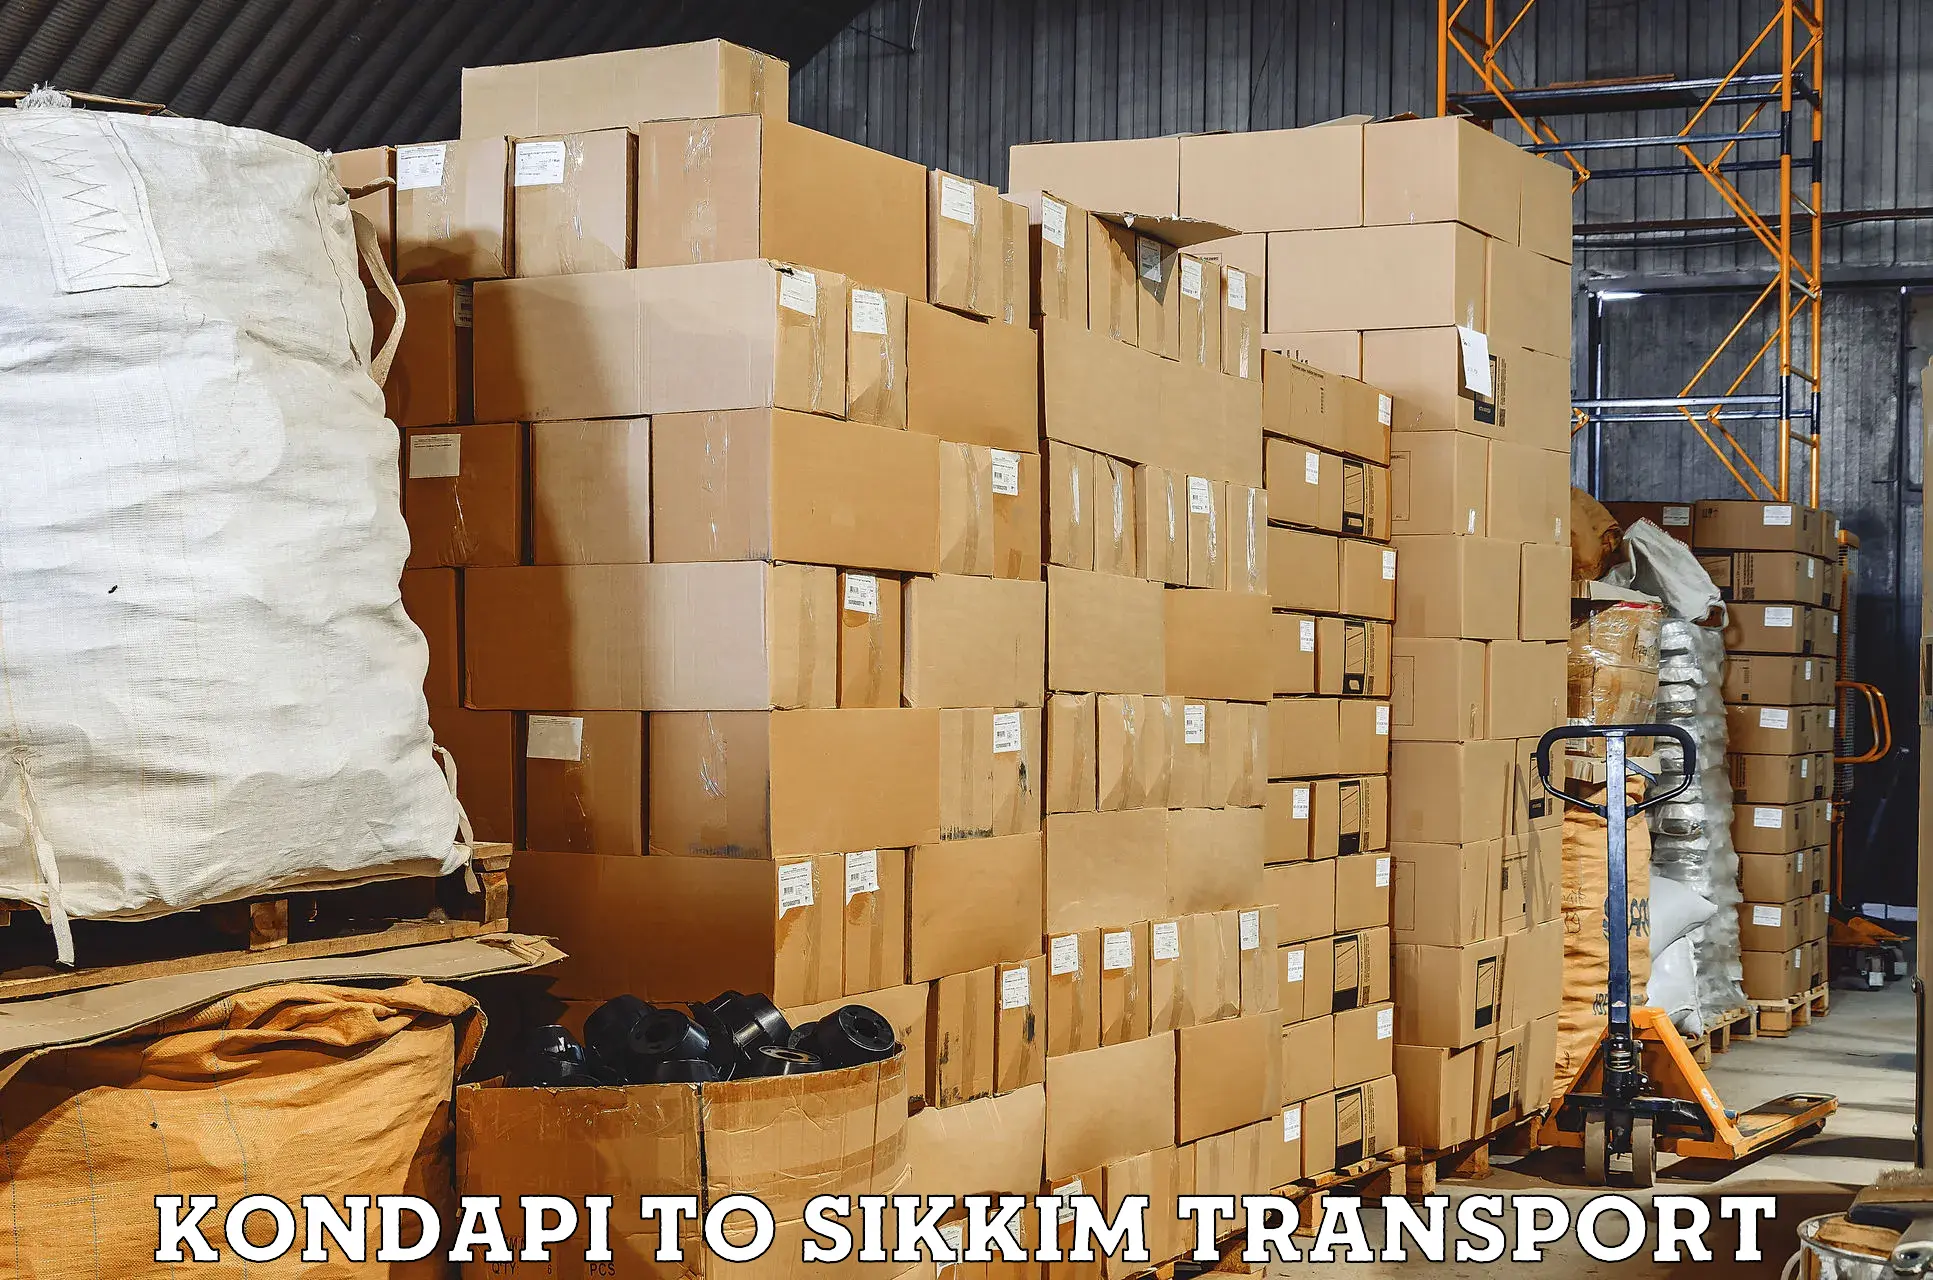 Shipping partner Kondapi to South Sikkim